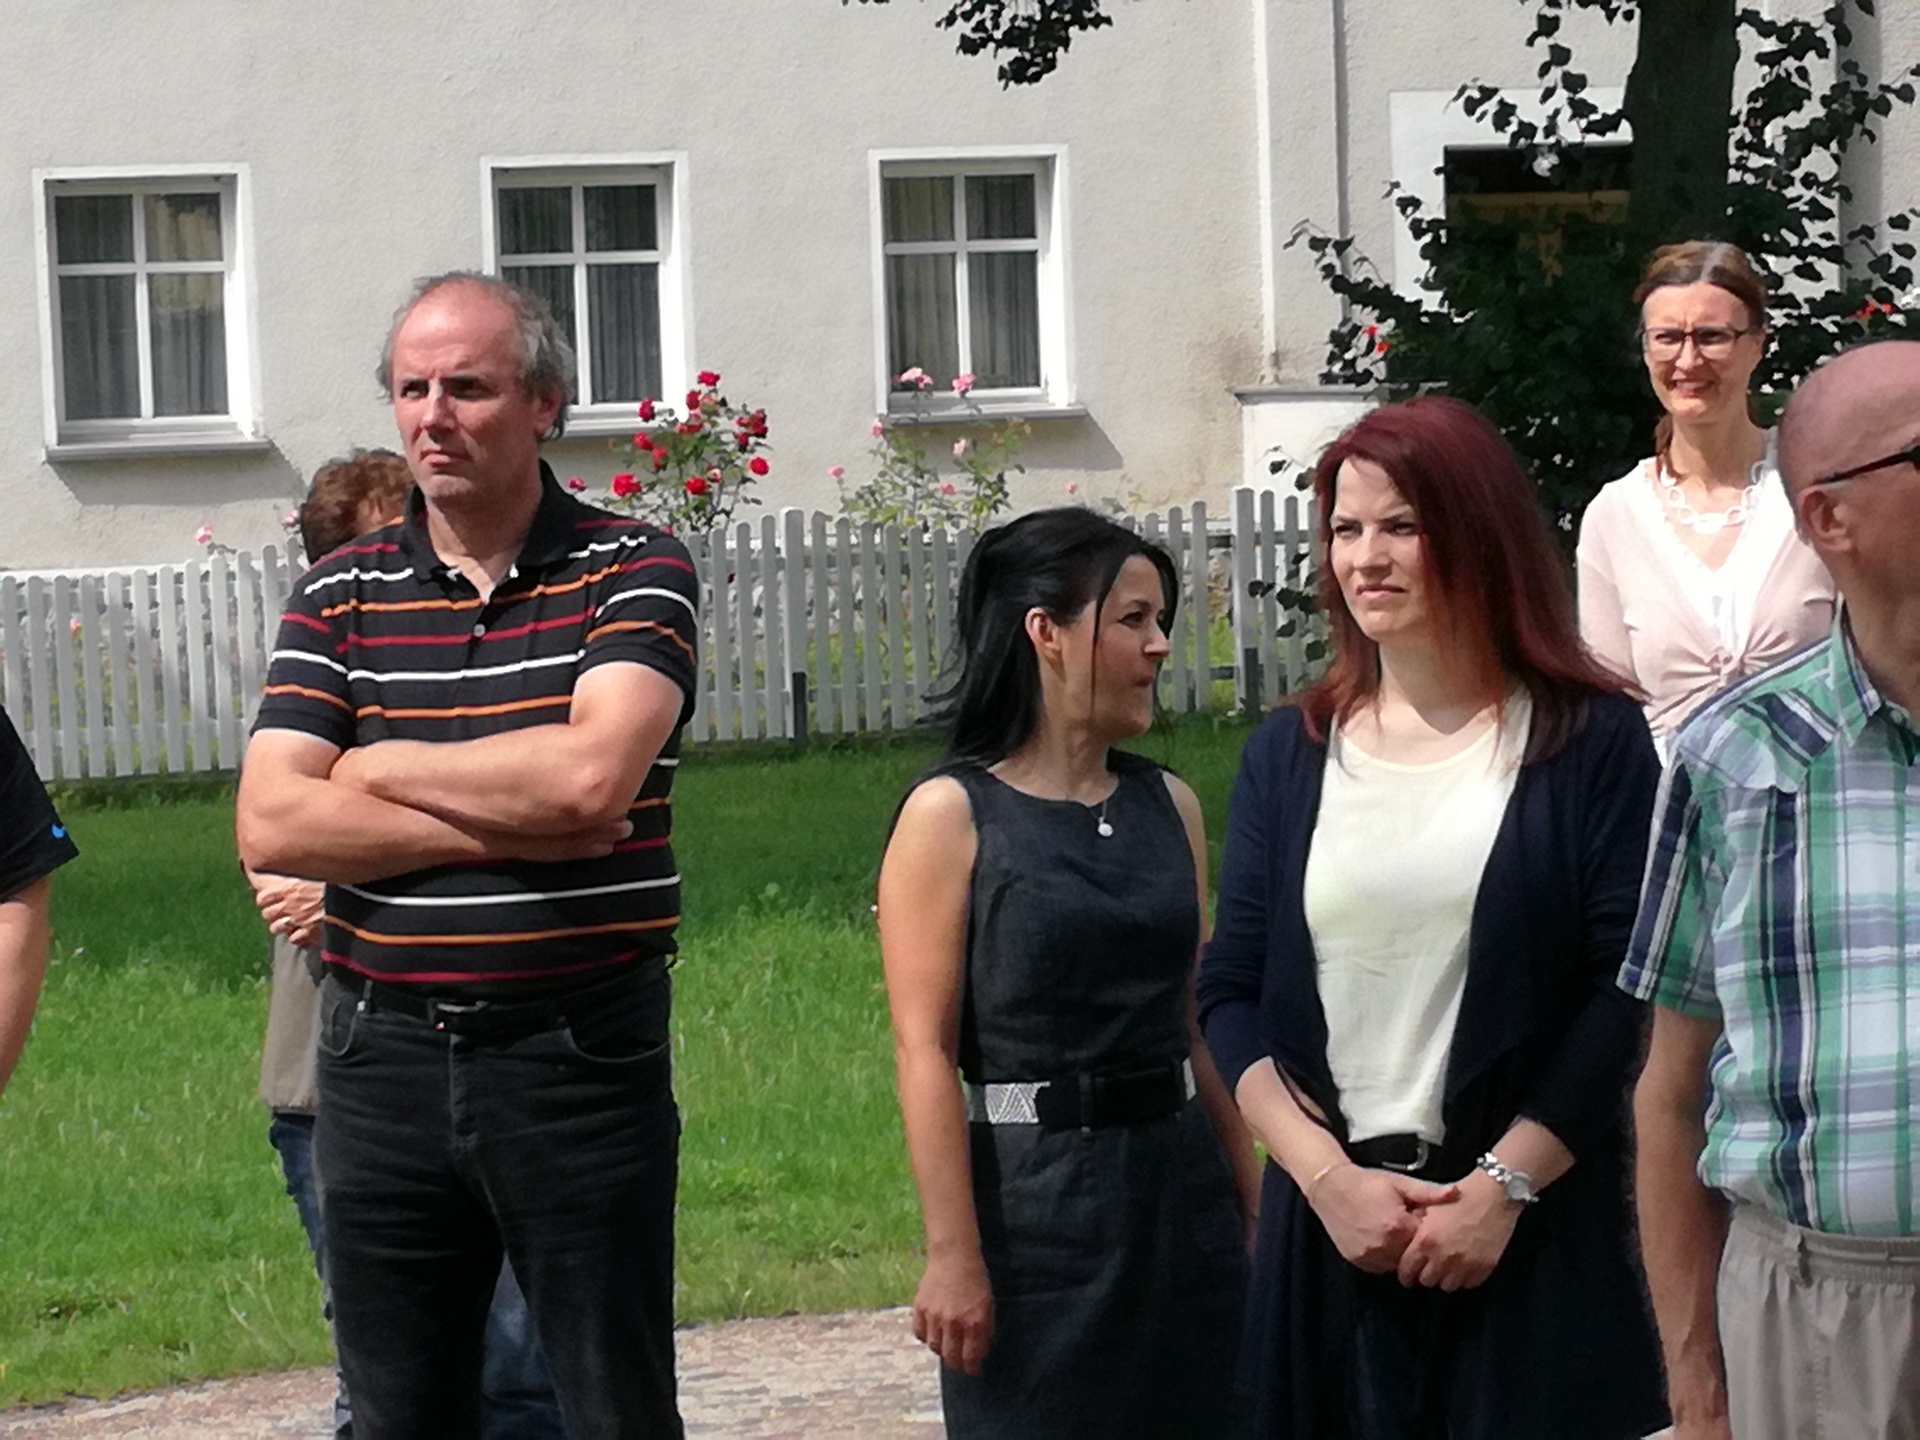 Bild : mit dabei: Bürgermeister Tutzschke, Amtsdirektorin Lenke, Bauamtsleiterin Richter